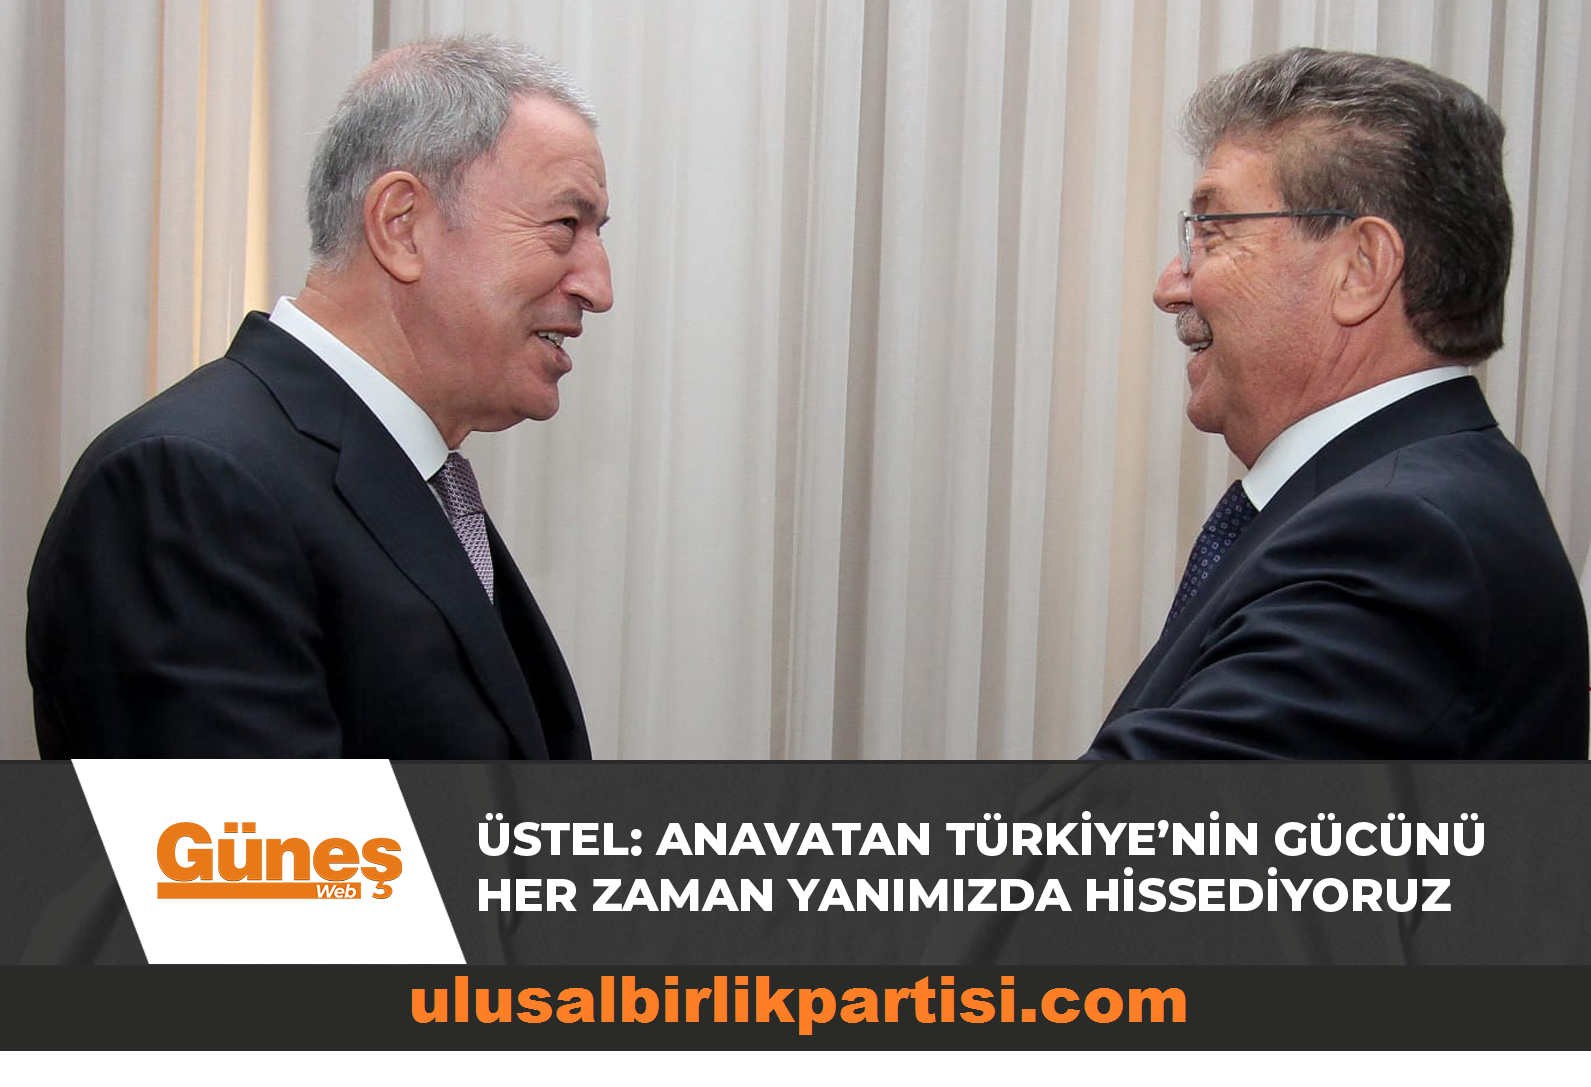 You are currently viewing Başbakan Üstel: Anavatan Türkiye’nin gücünü her zaman yanımızda hissediyoruz